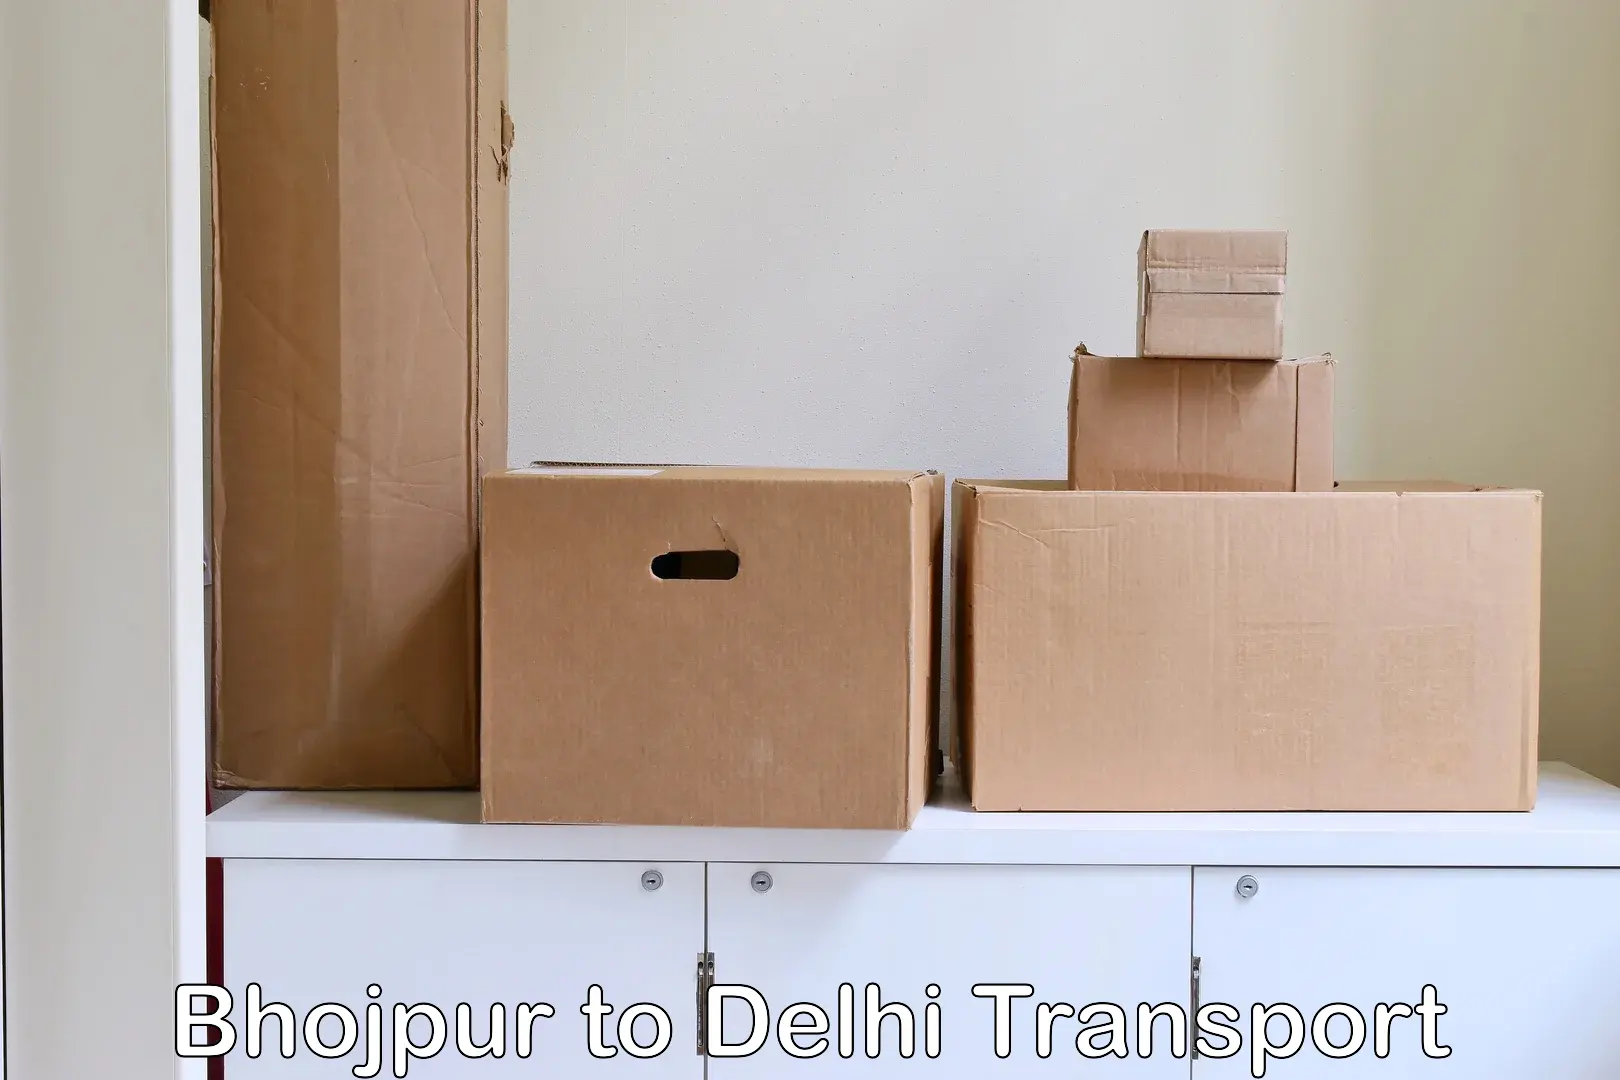 Delivery service Bhojpur to Delhi